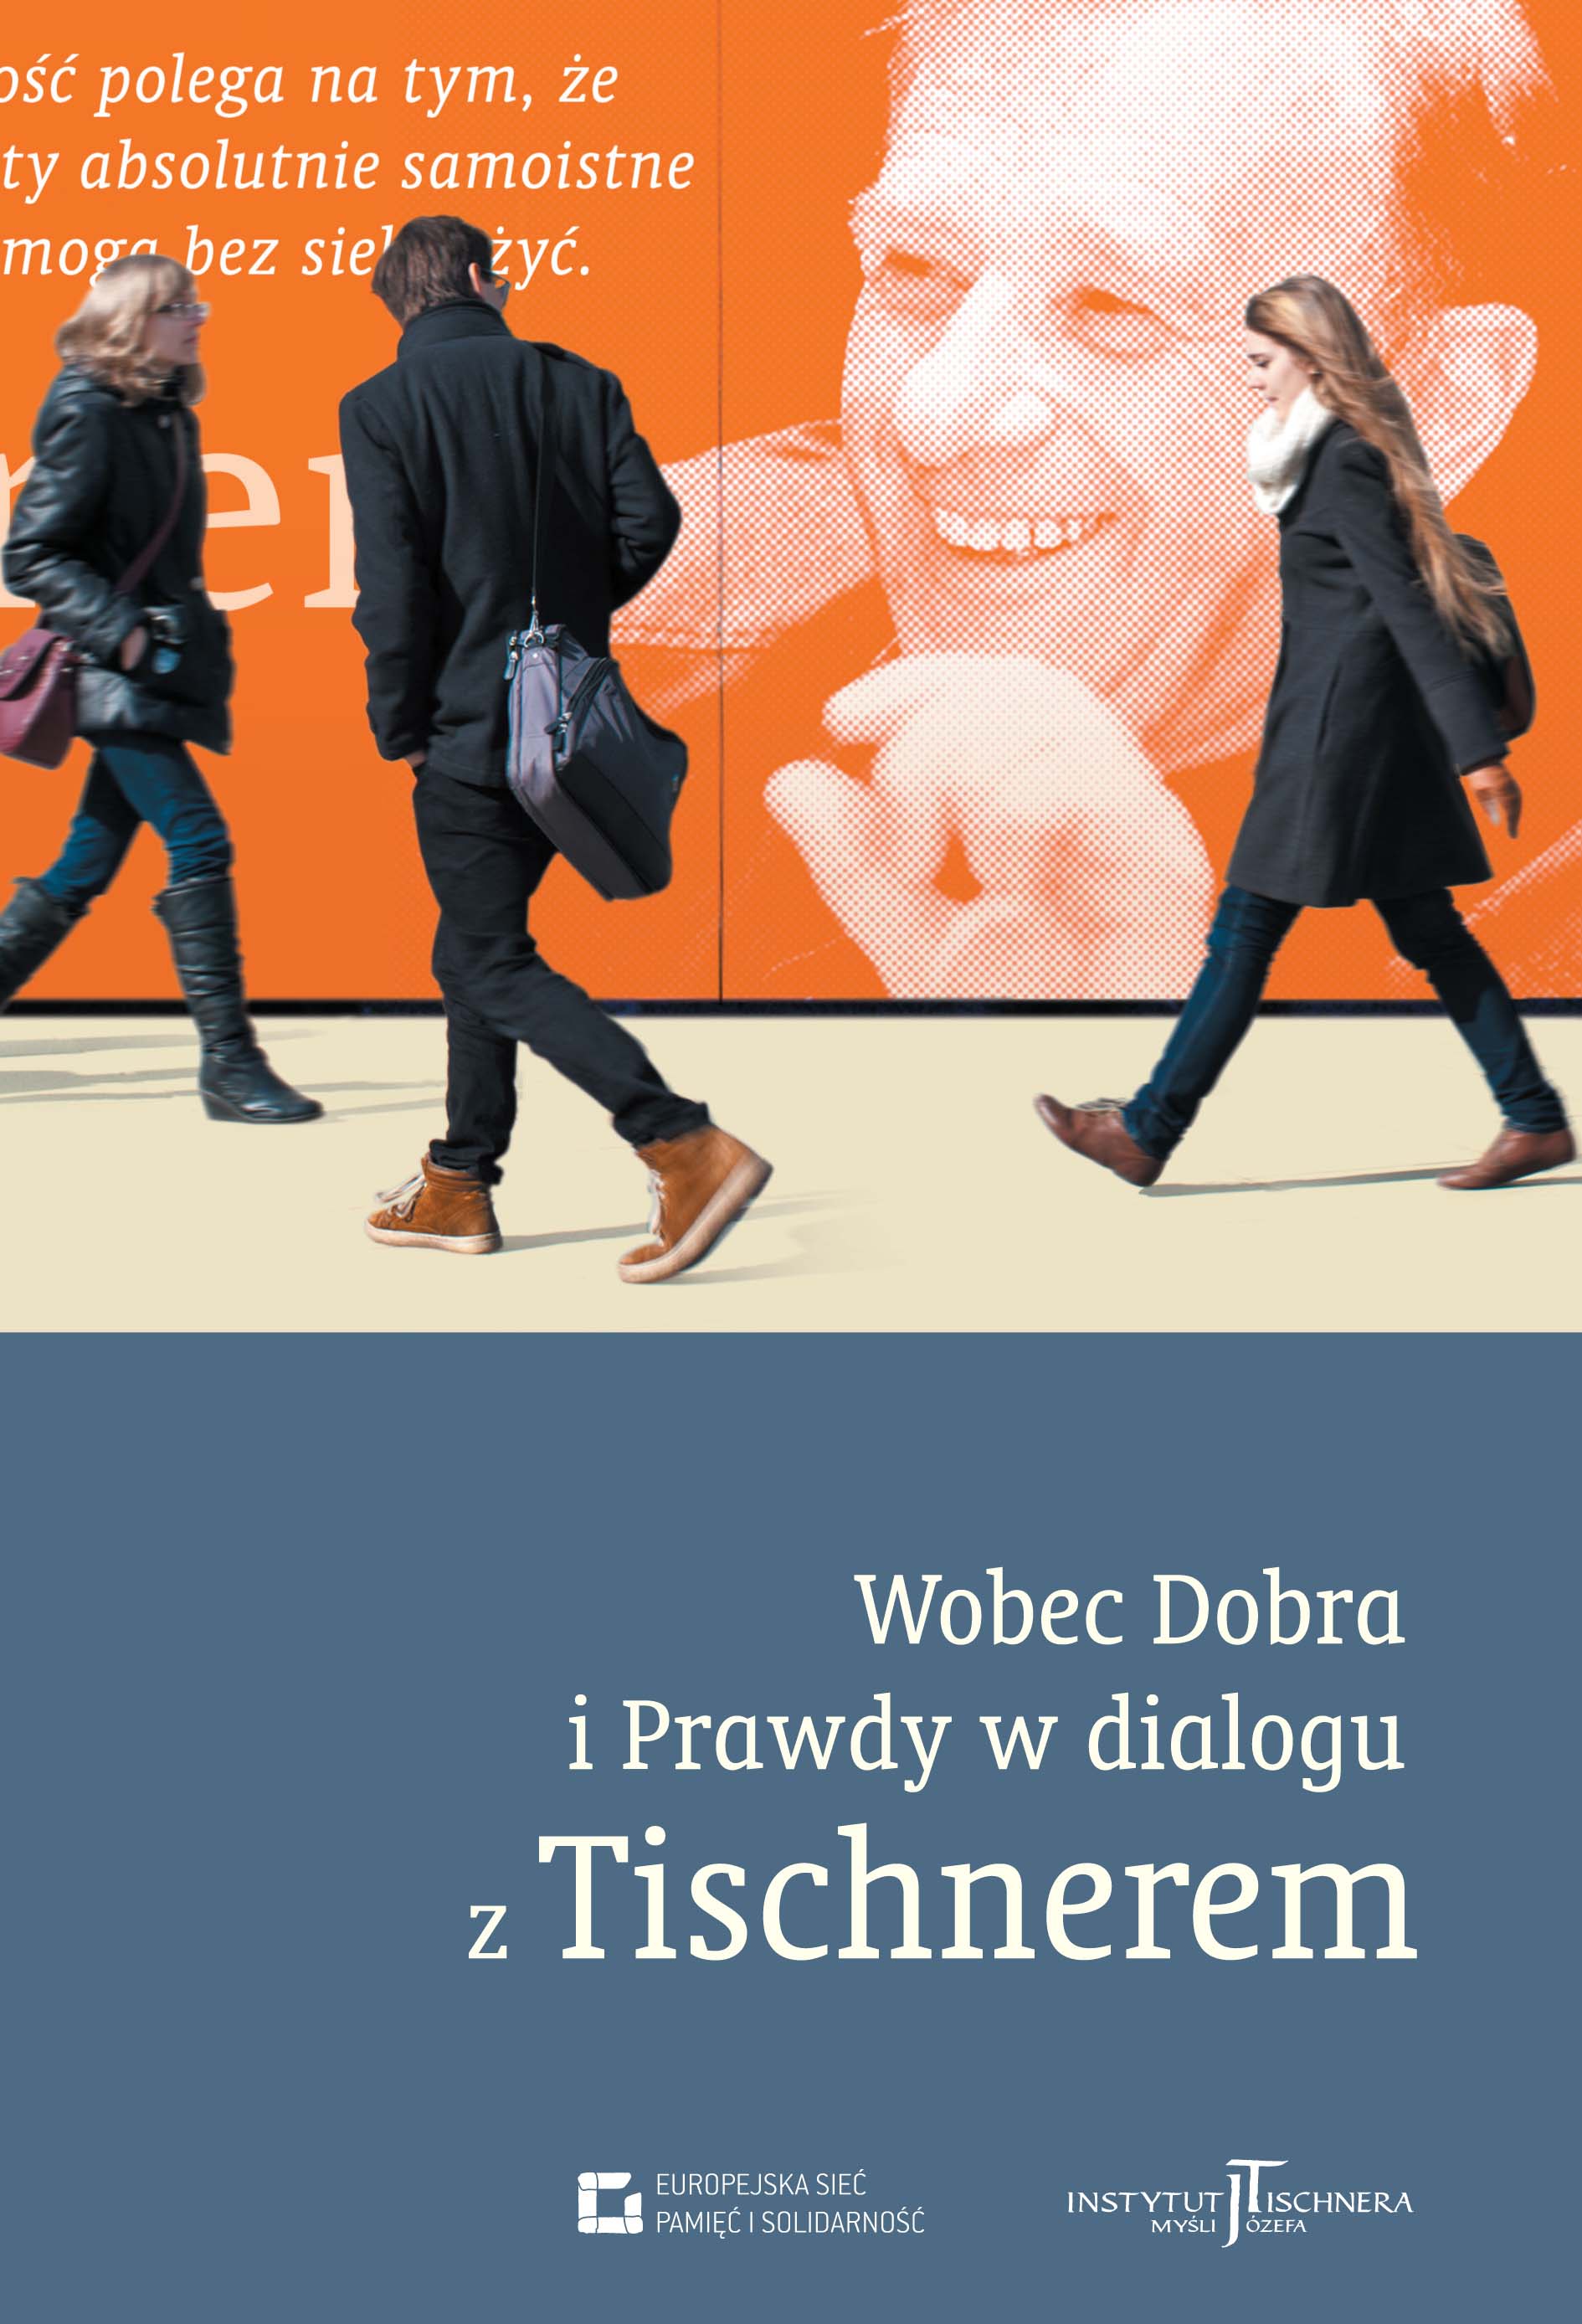 Photo of the publication Wobec Dobra i Prawdy. W dialogu z Tischnerem